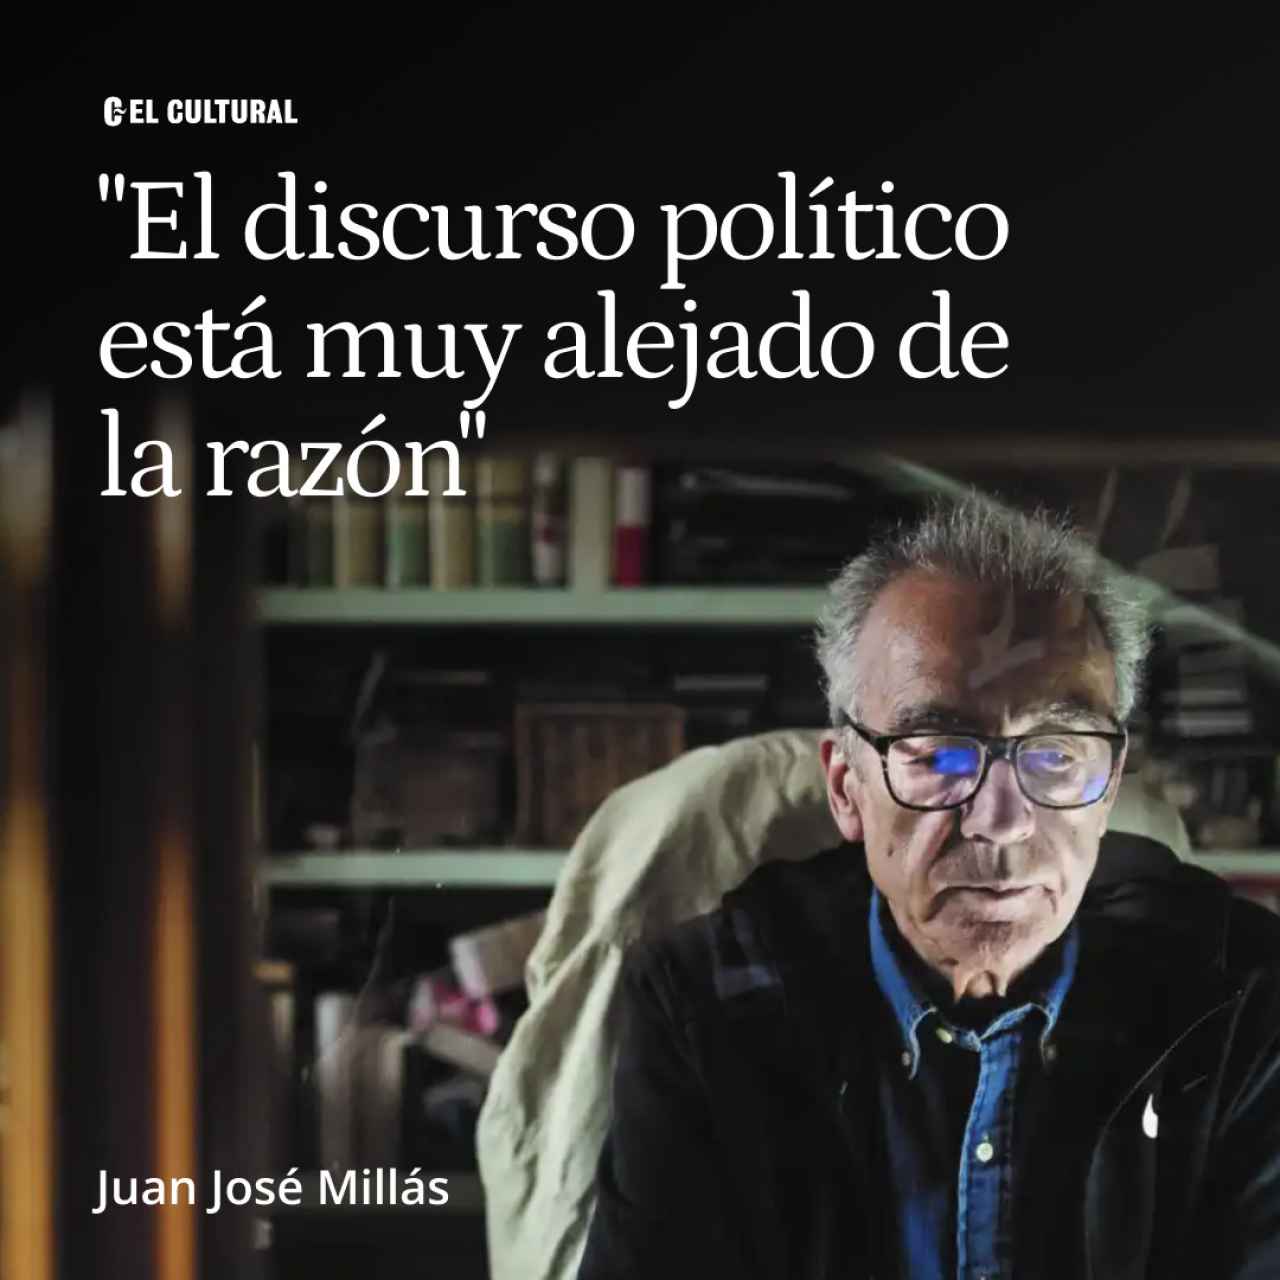 Juan José Millás: “El discurso político está muy alejado de la razón”